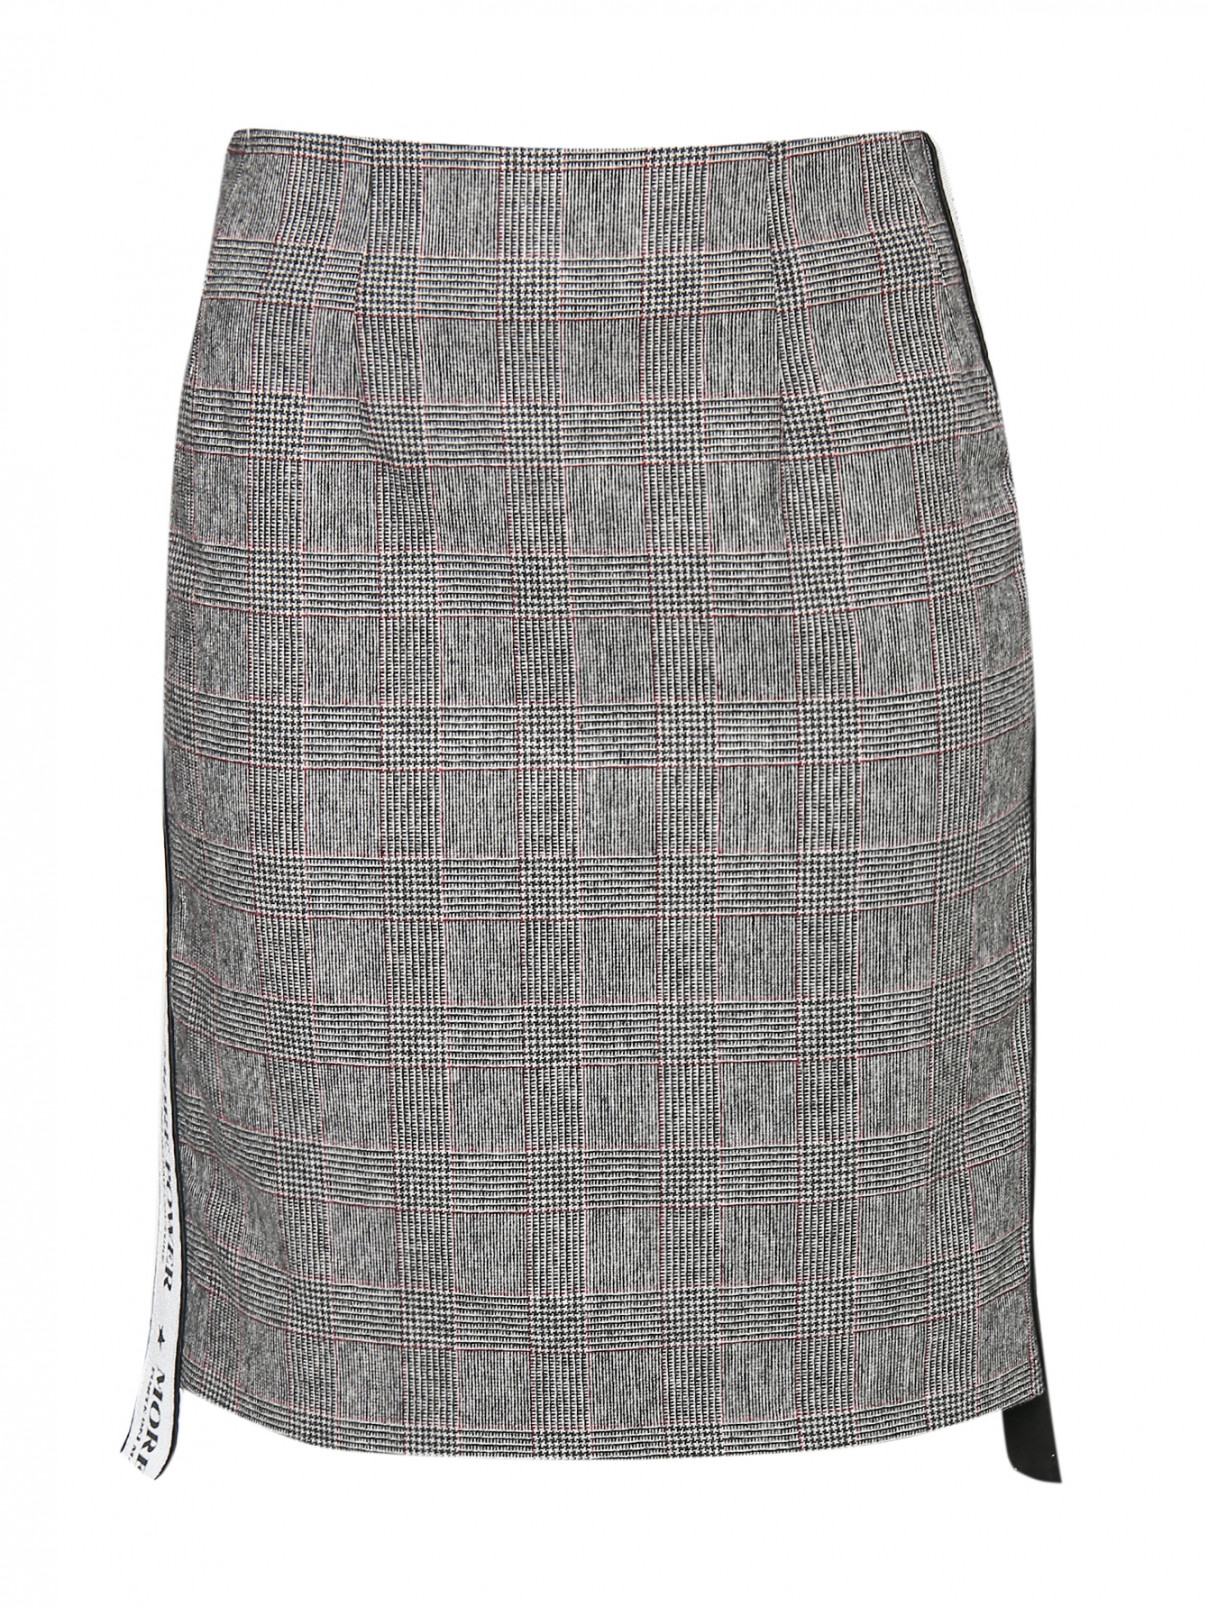 Юбка-мини из смешанной шерсти с узором и контрастной отделкой Forte Dei Marmi Couture  –  Общий вид  – Цвет:  Серый